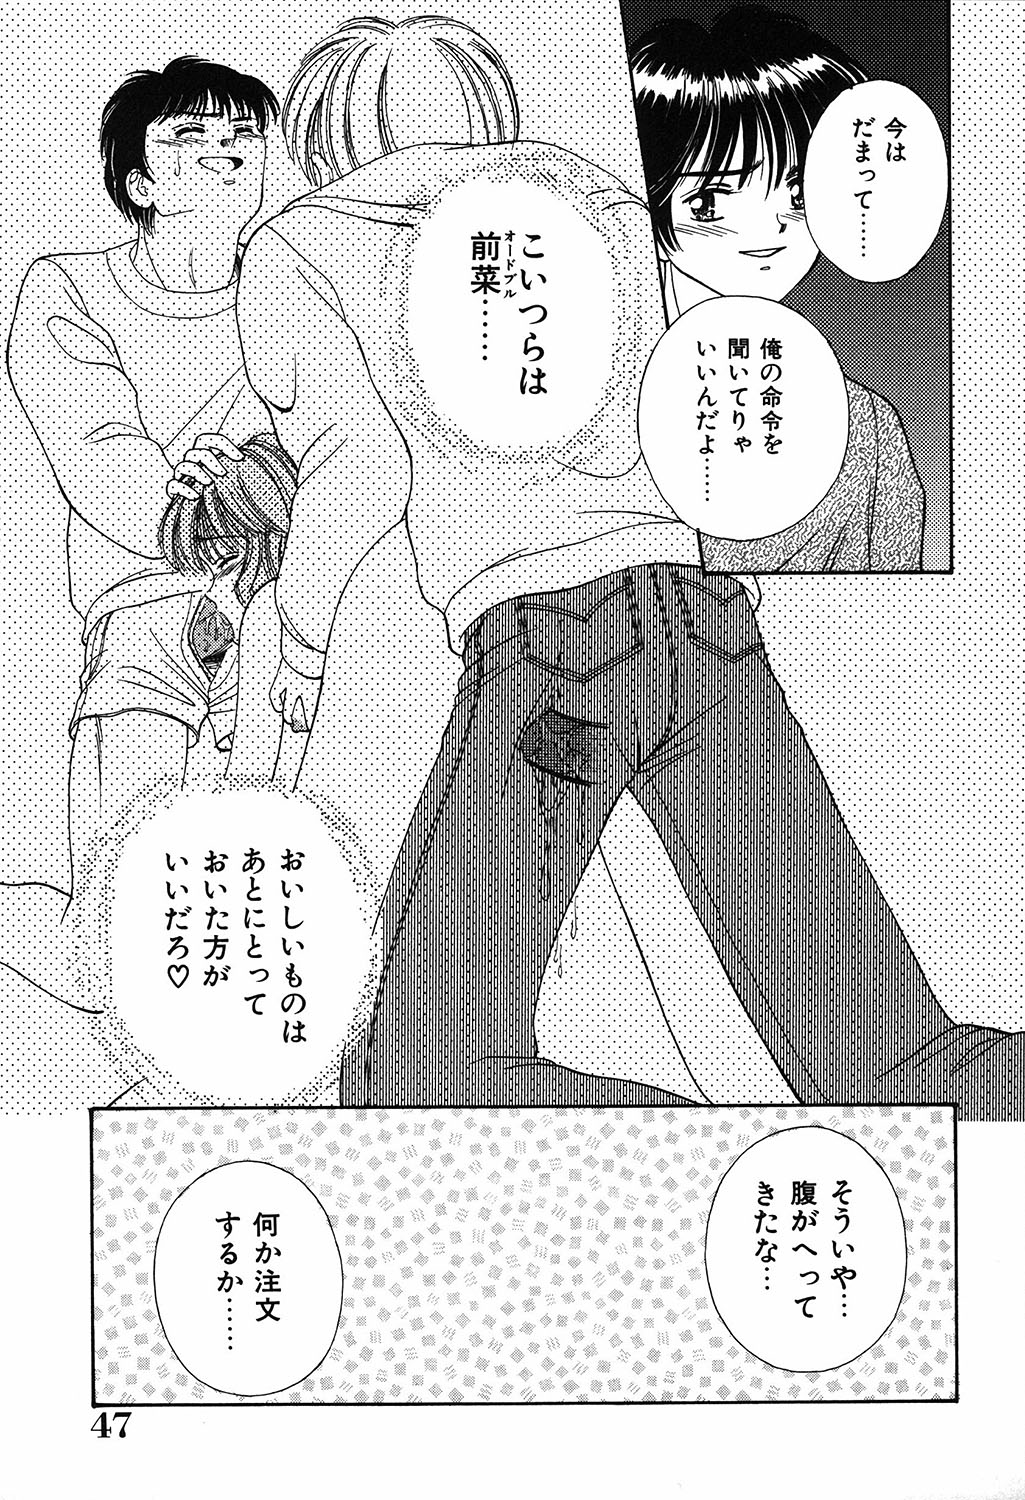 [Ayumi] Daisuki page 47 full